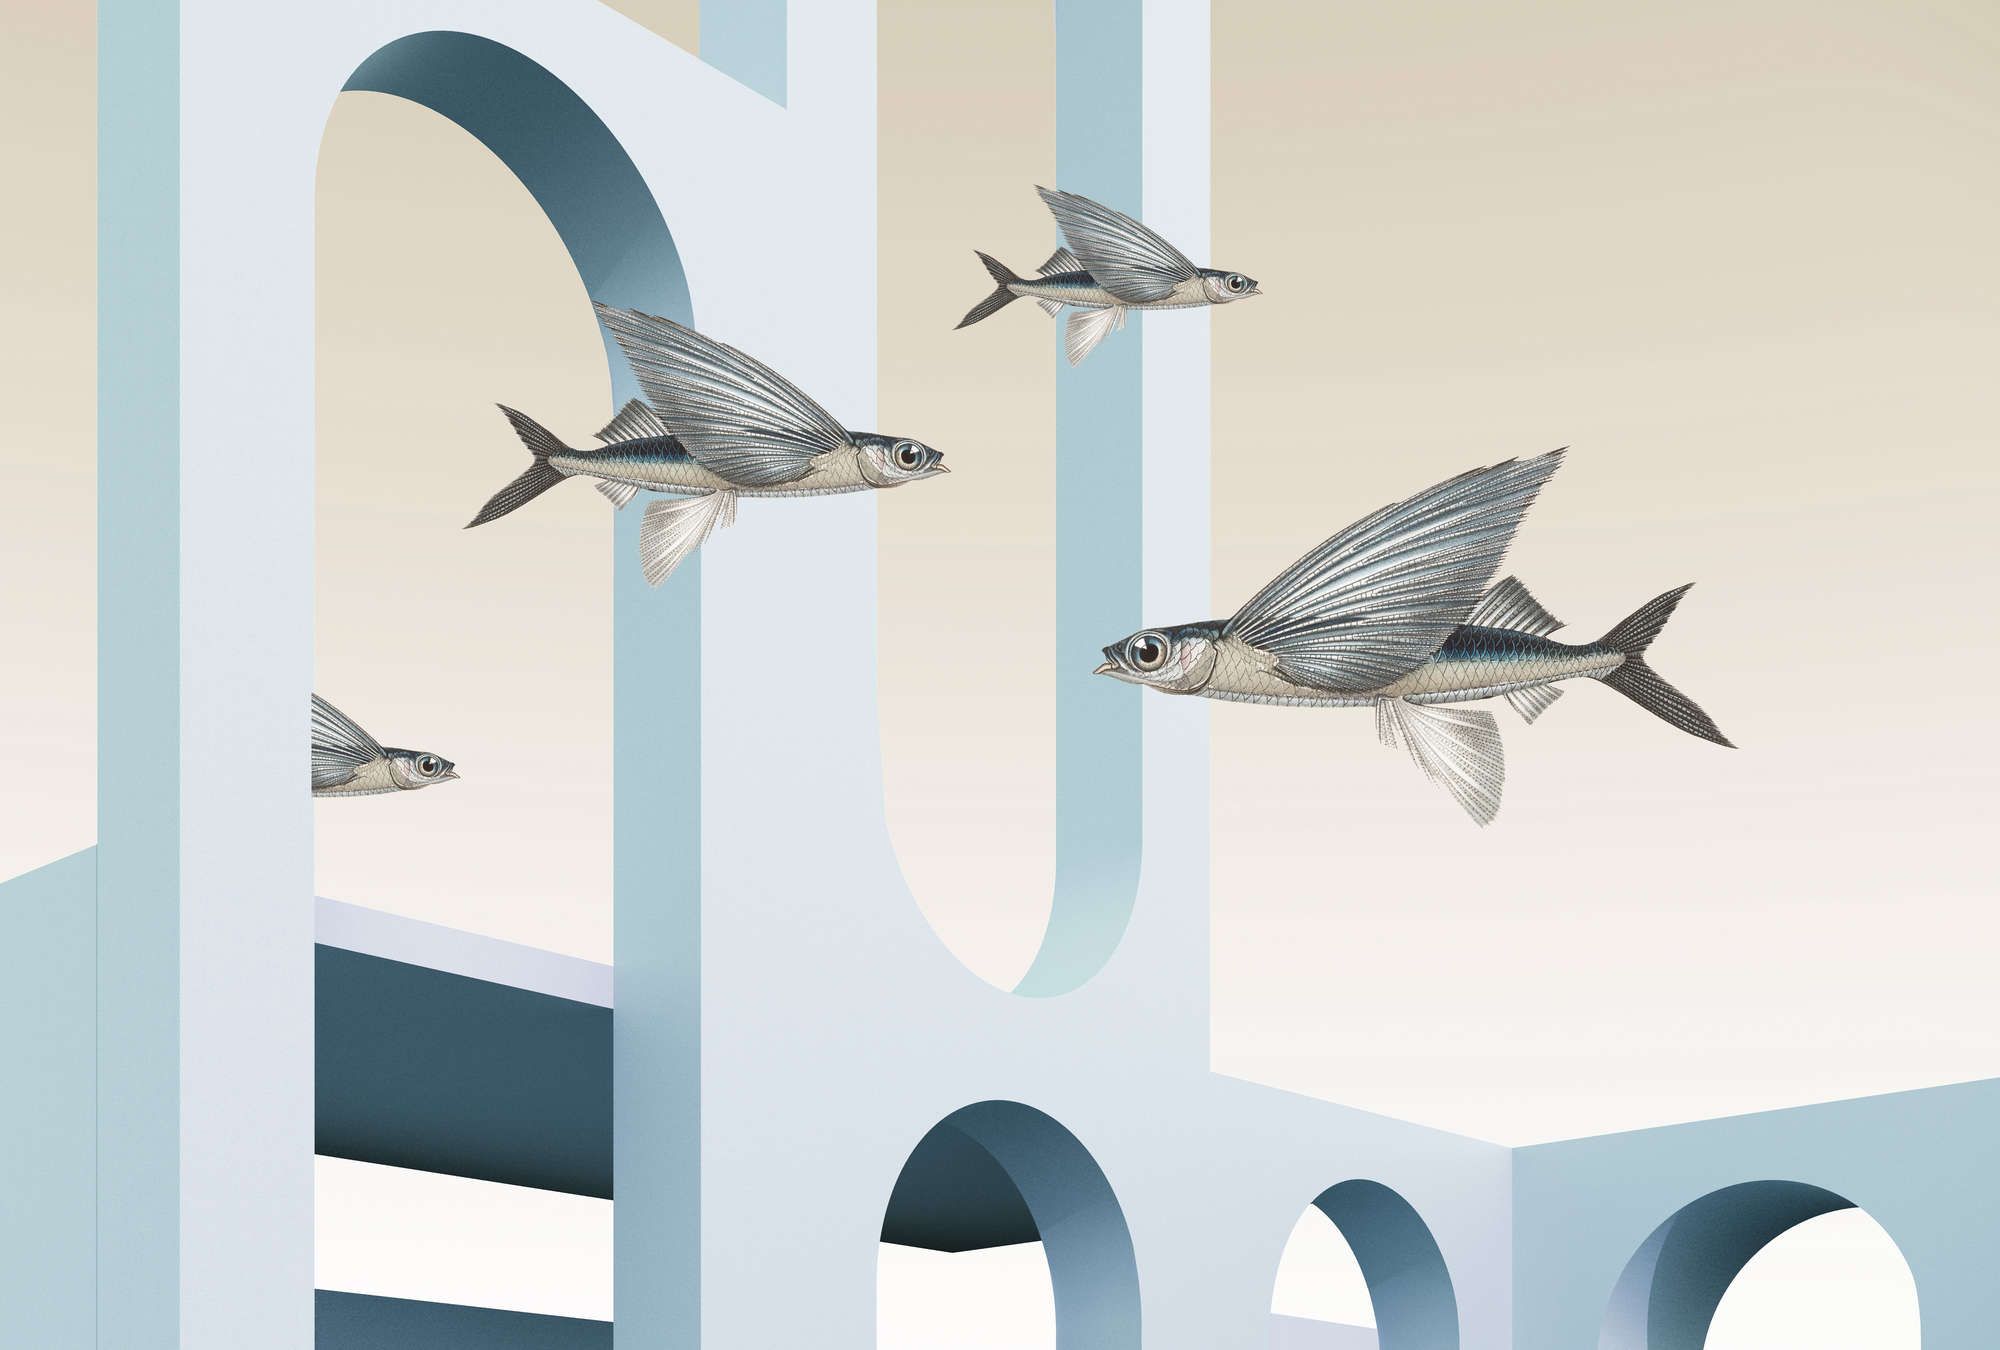             styx - Digital behang met abstracte 3D-architectuur en vliegende vissen - mat, glad vlies
        